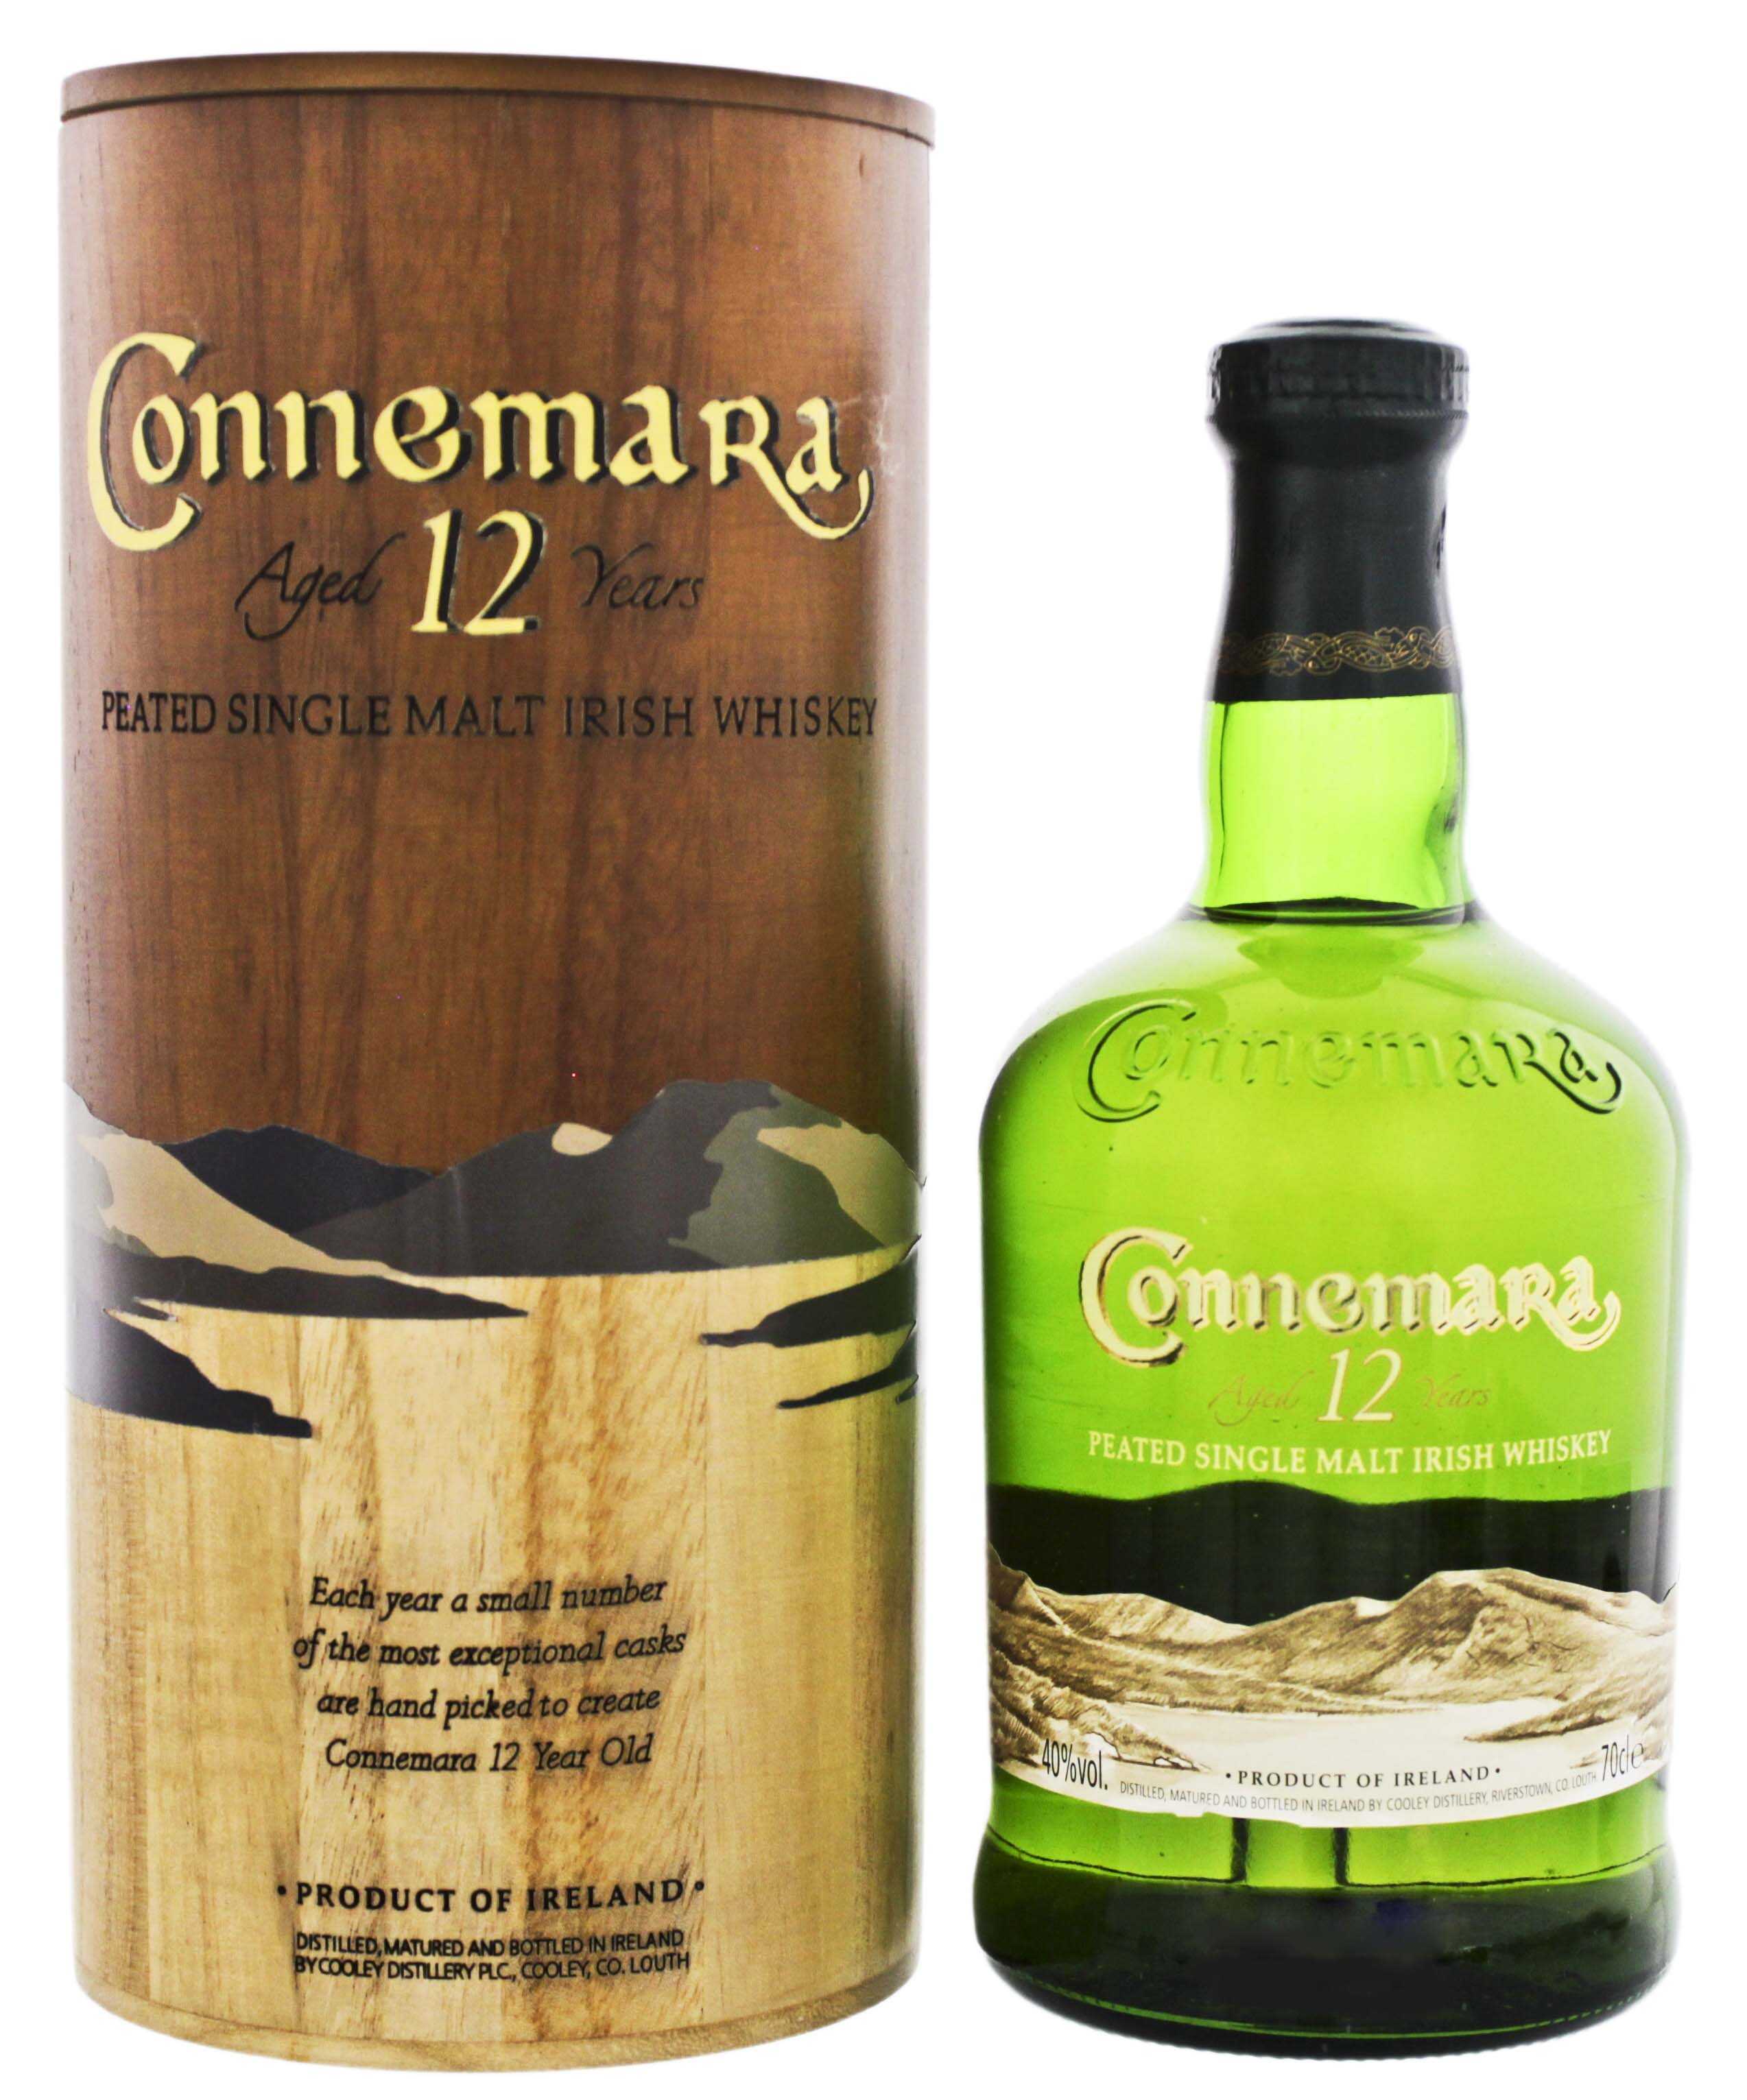 Ирландский виски коннемара (connemara) - молодой и очень популярный